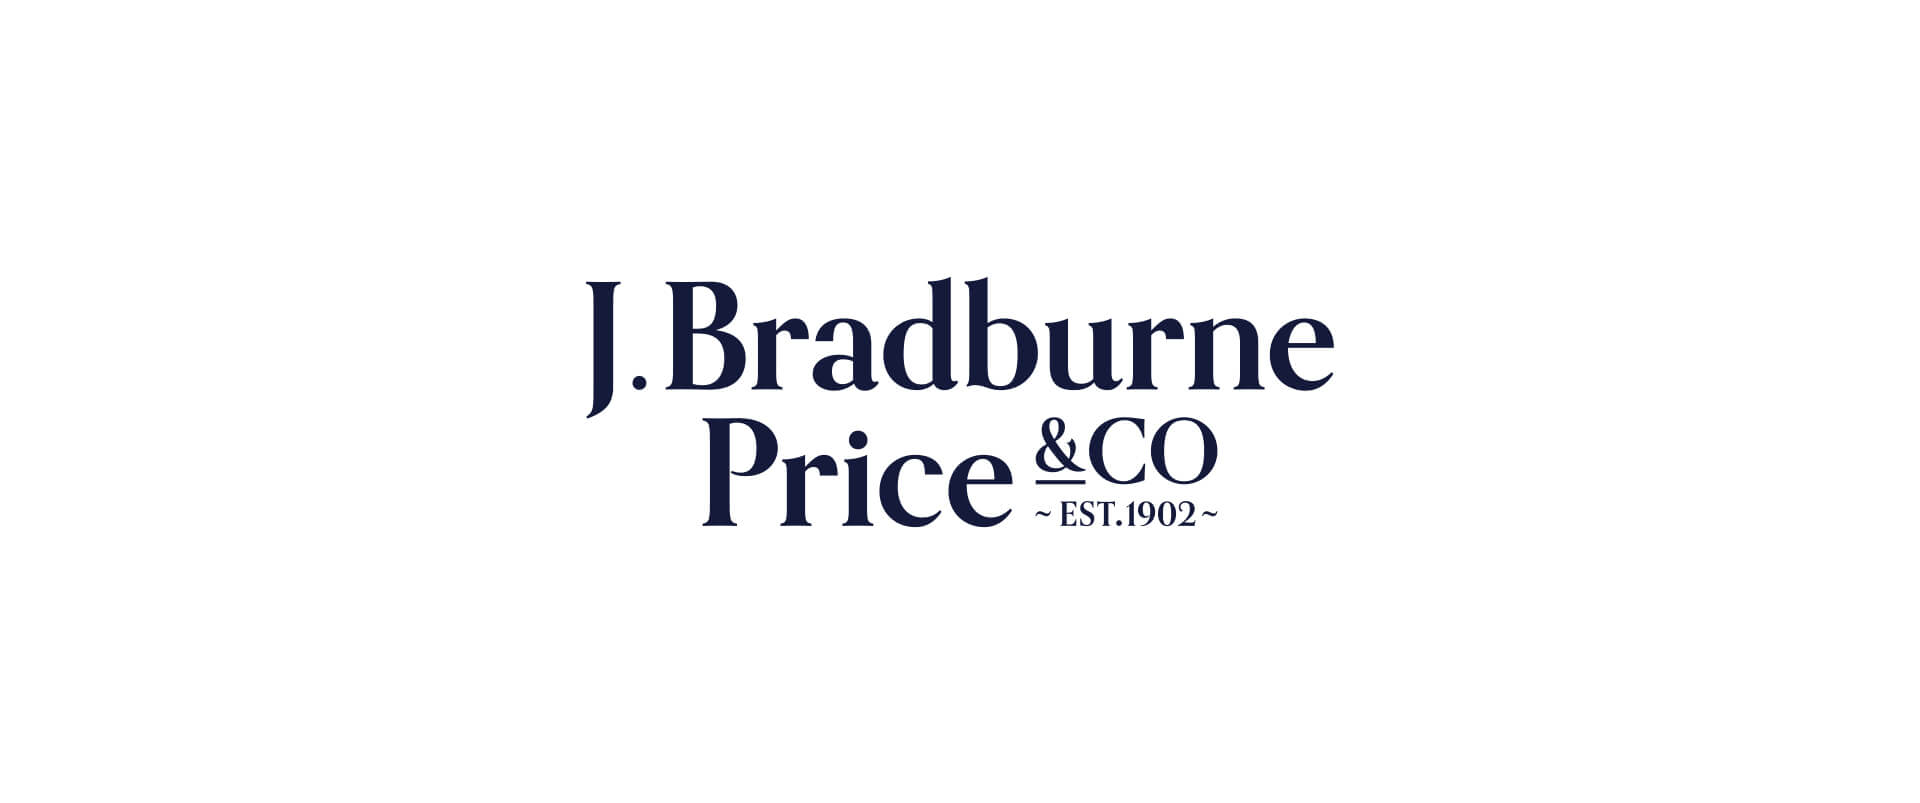 J Bradburne Price & Co Logo Design